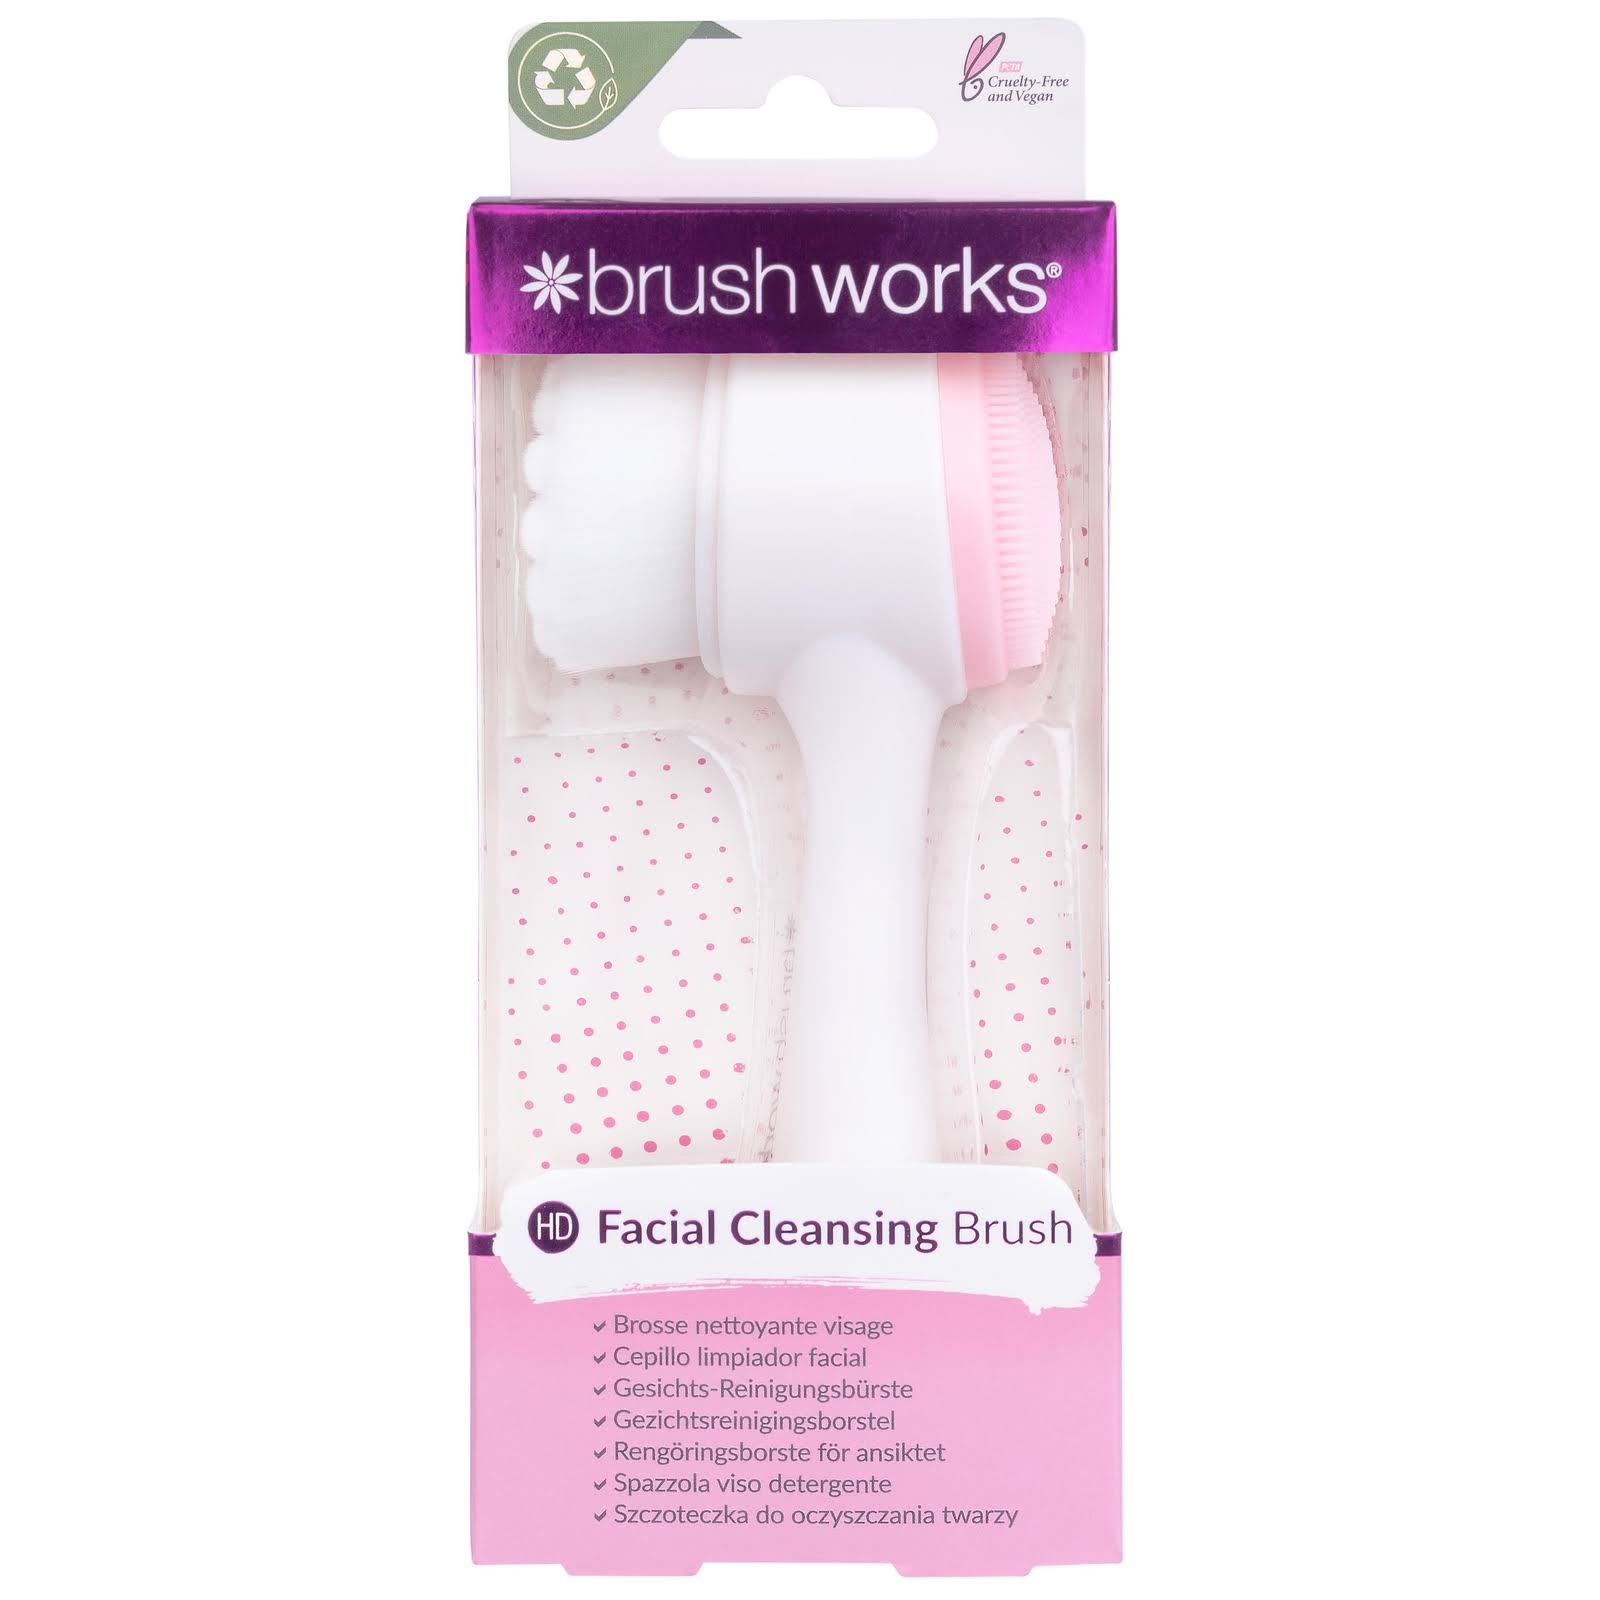 Brushworks Cleansing Facial Brush